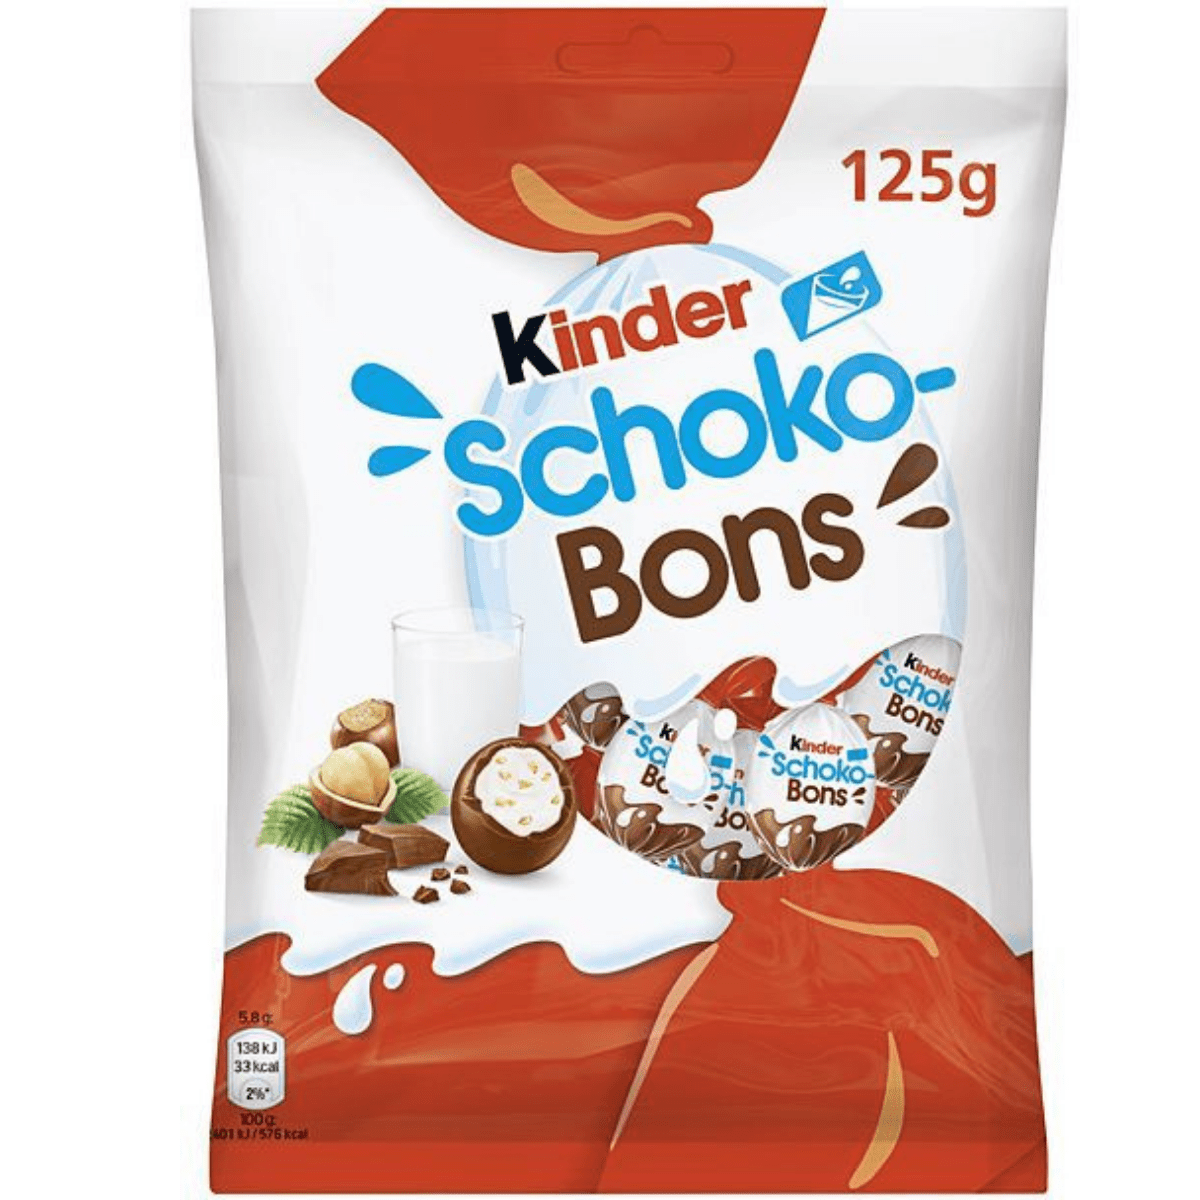 Kinder Schoco Bons (125g)